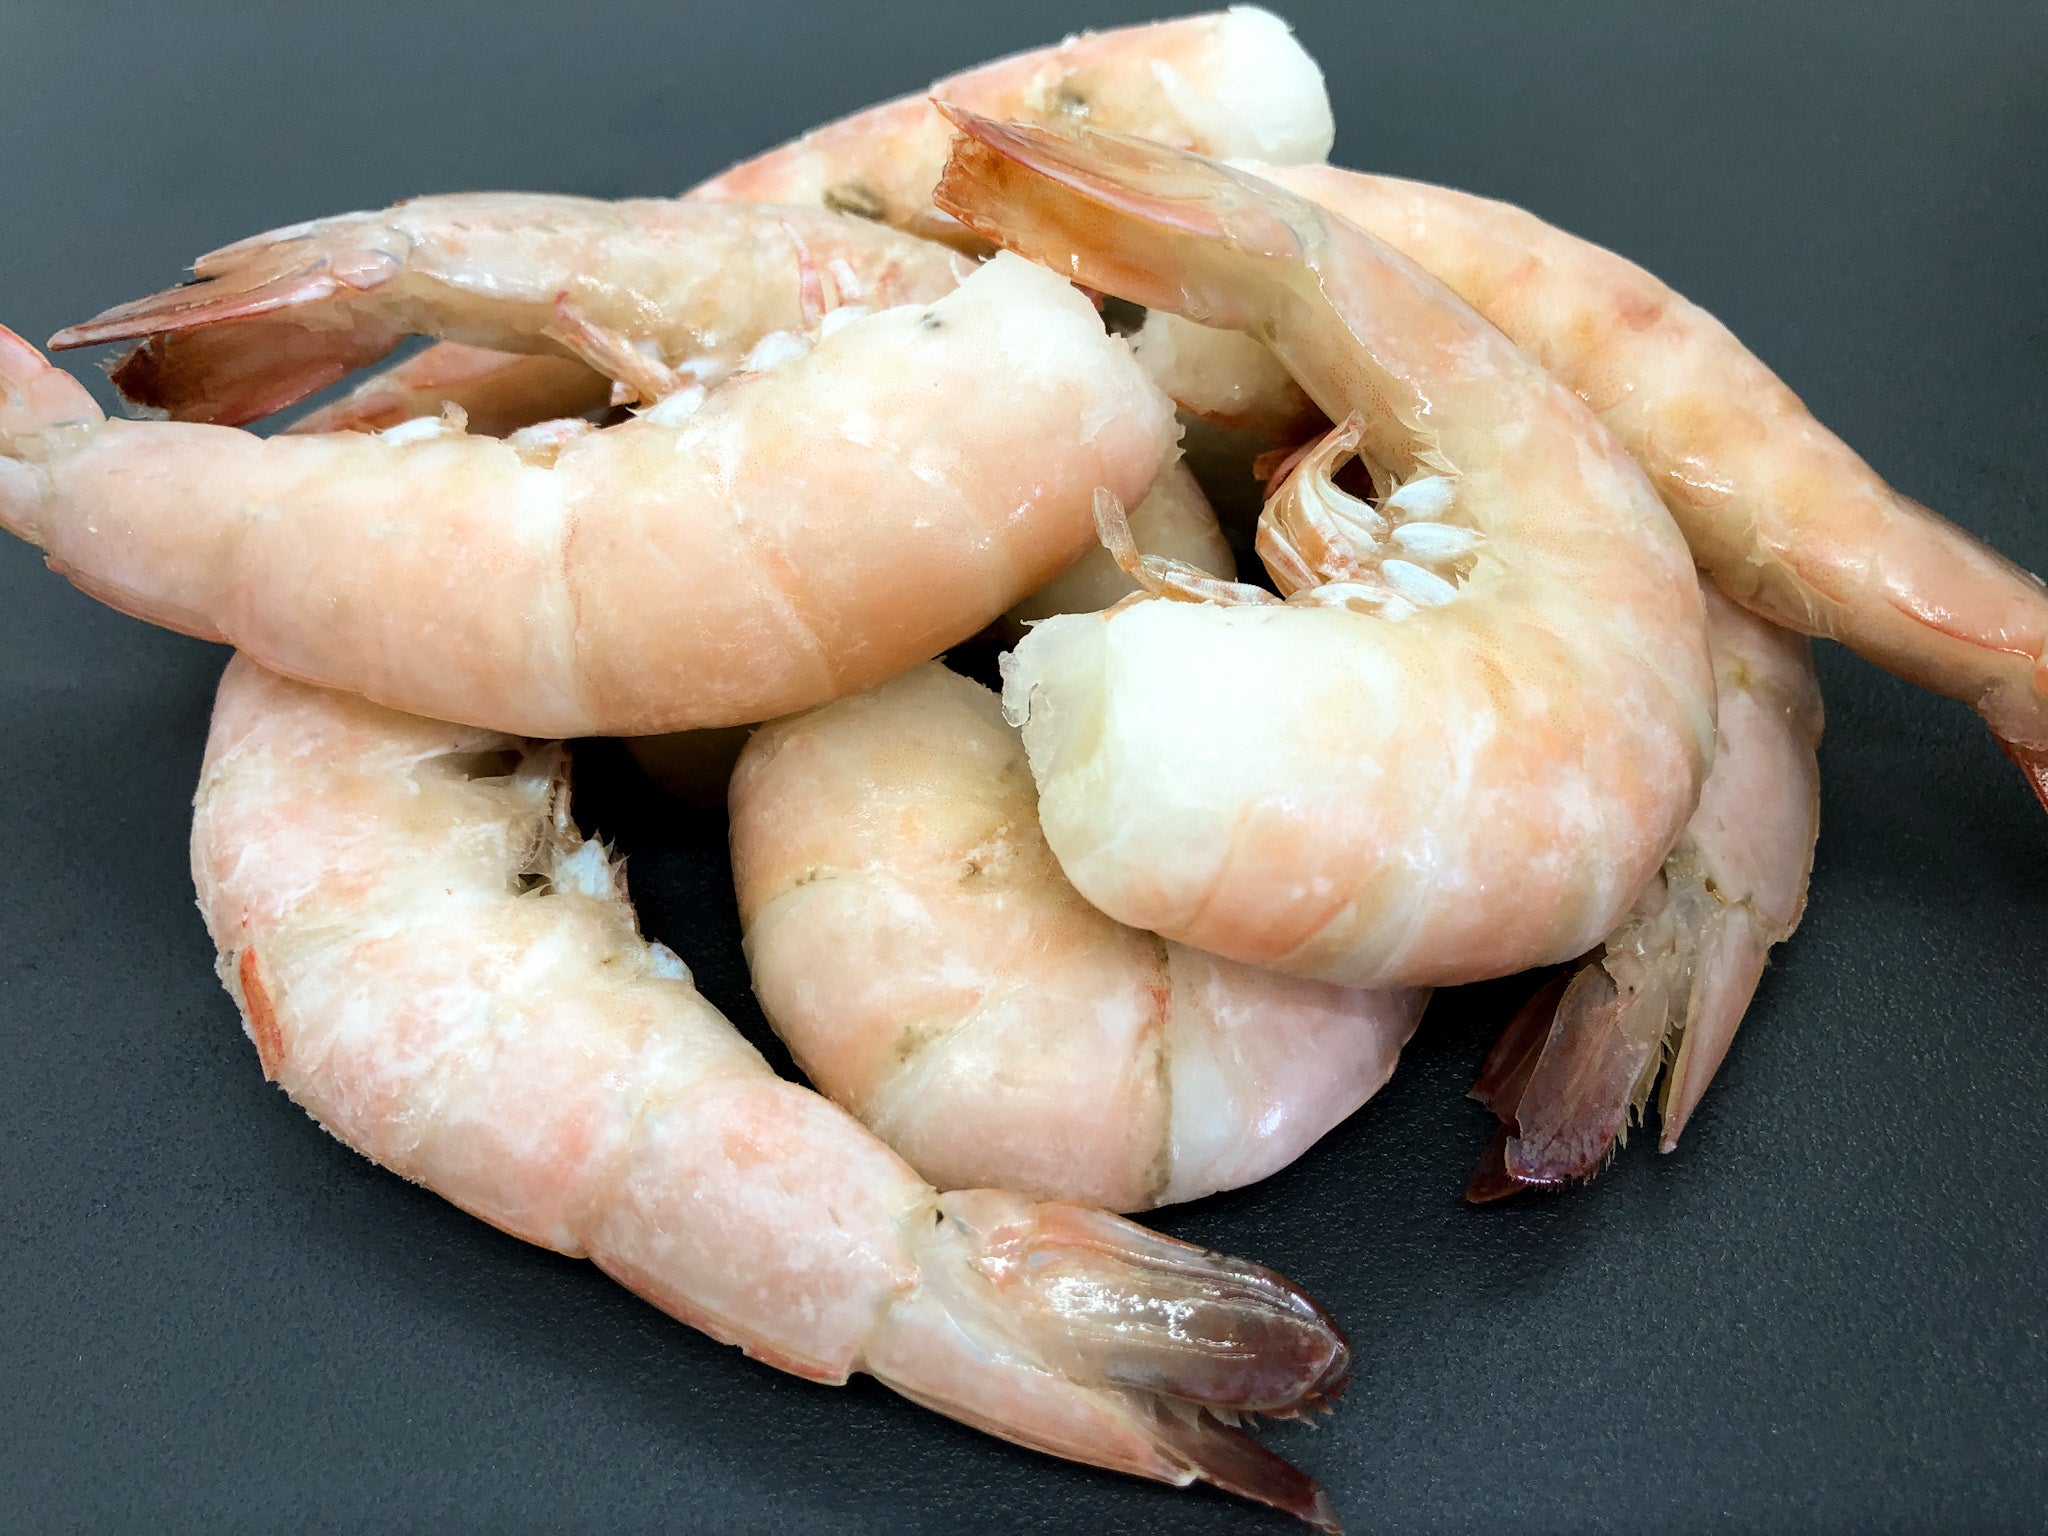 Jumbo Peeled & Deveined Shrimp